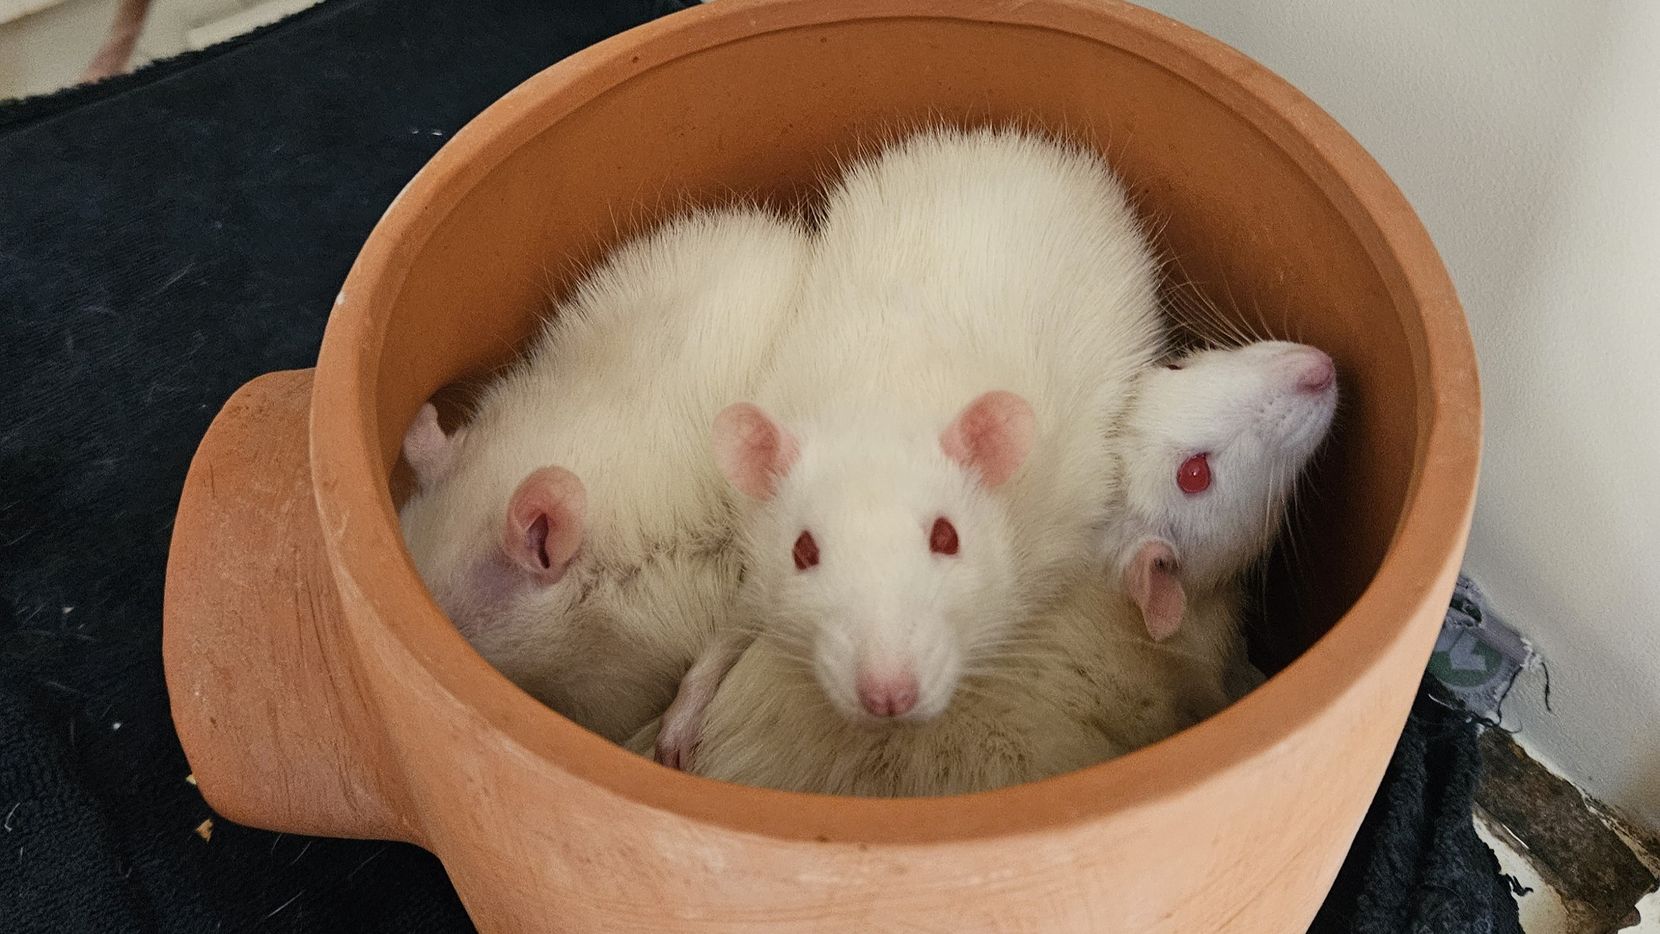 Man sieht mehrere weisse Ratten in einem Tonkrug sitzen.